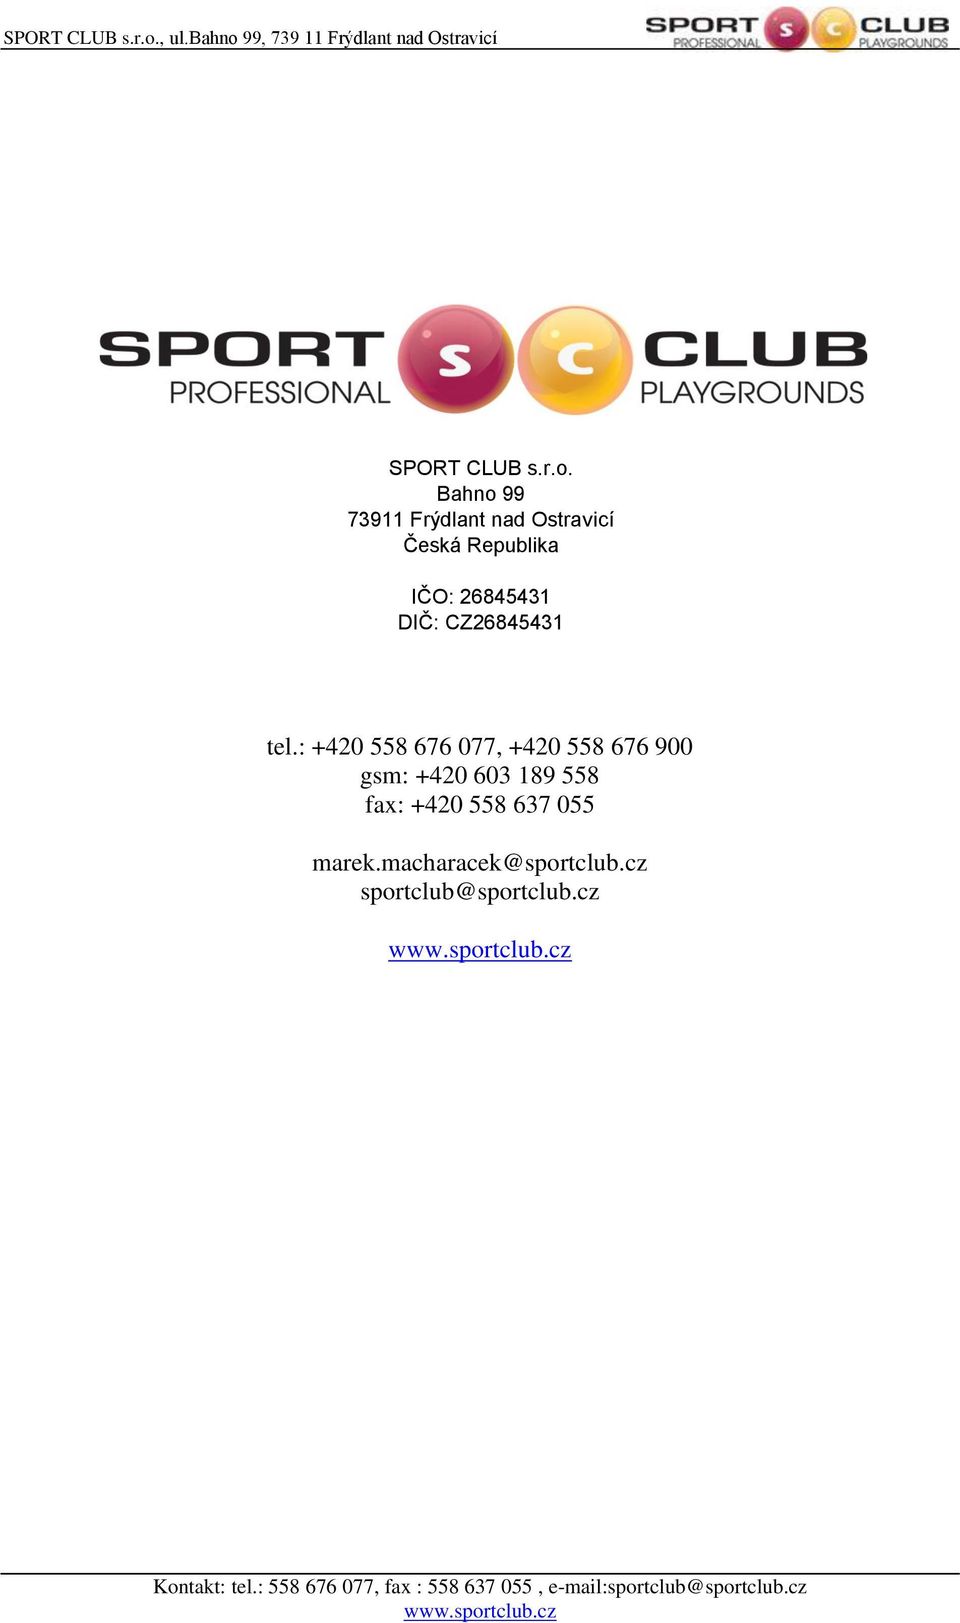 gsm: +420 603 185 558 tel.: + 420 558 676 077 fax: +420 558 637 055 prodej@sportclub.